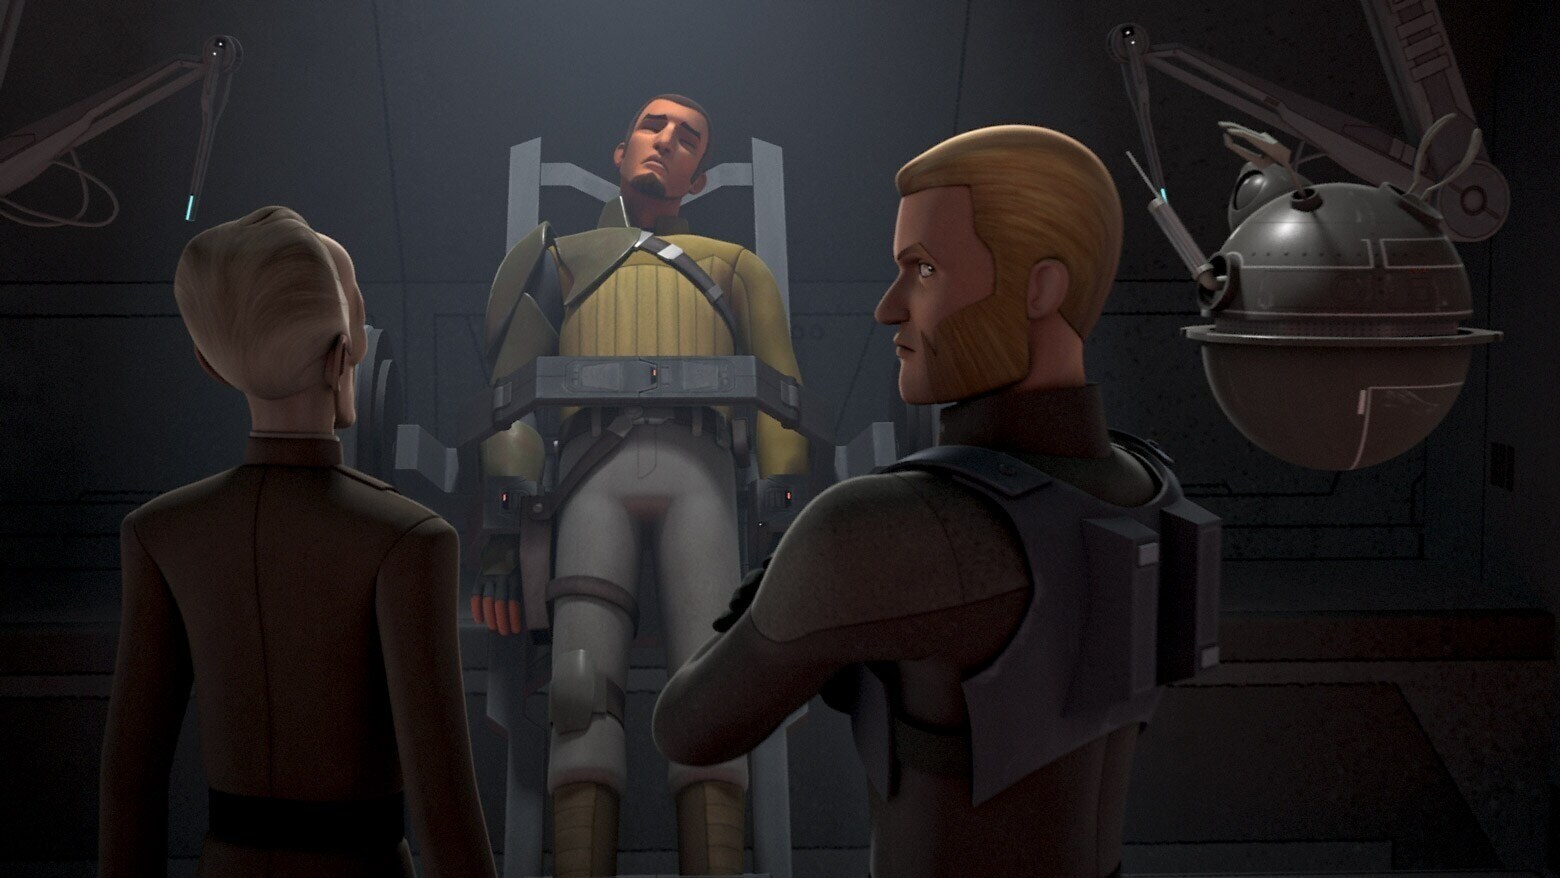 Kanan Jarrus restricted in Imperial custody in Star Wars Rebels episode, "Rebel Resolve" 